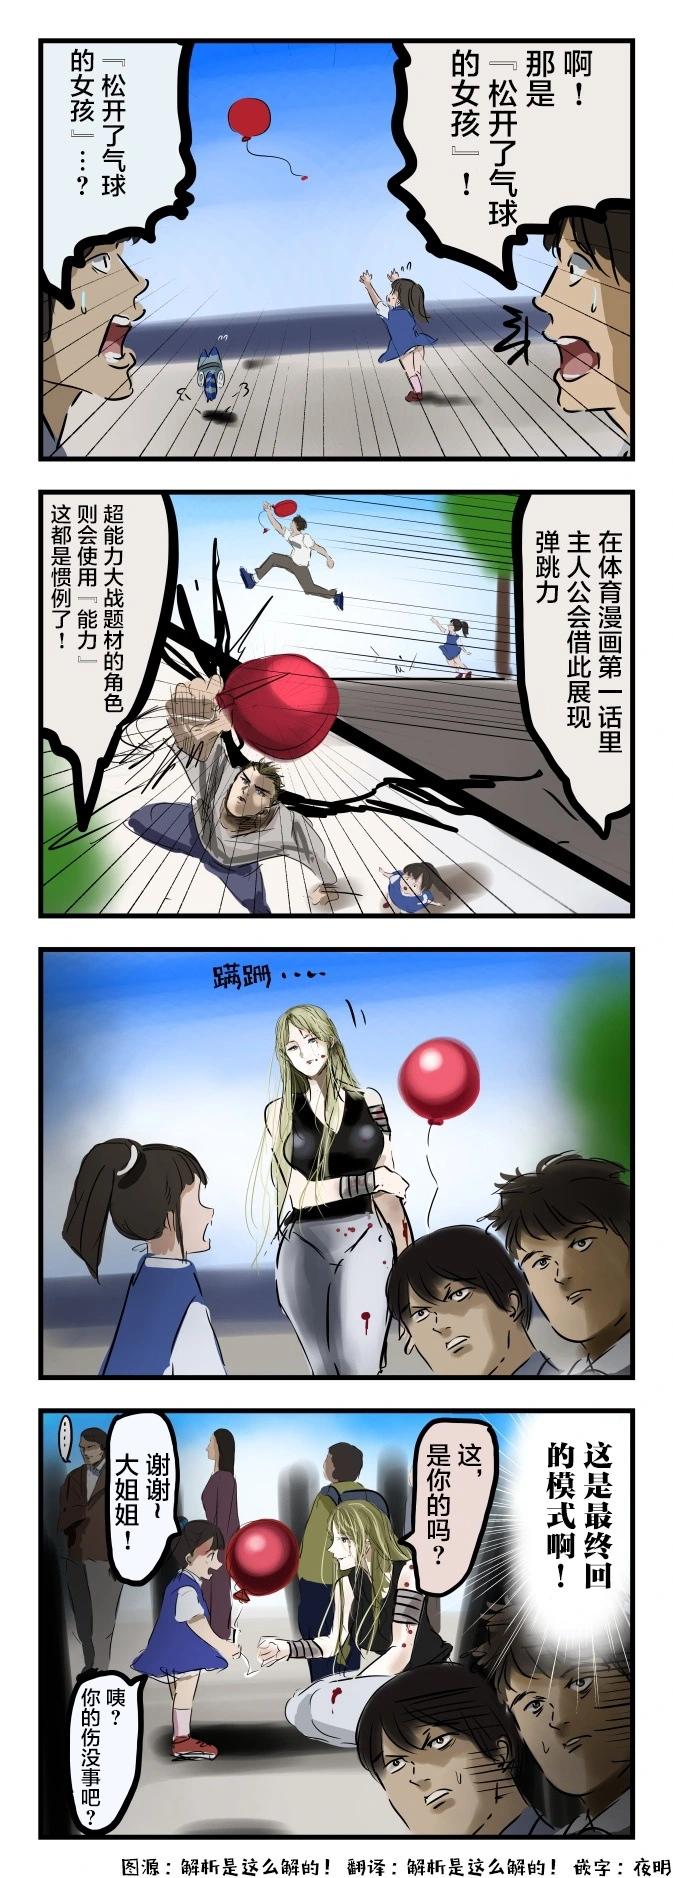 カコミスル老師四格合集 - 氣球 - 1